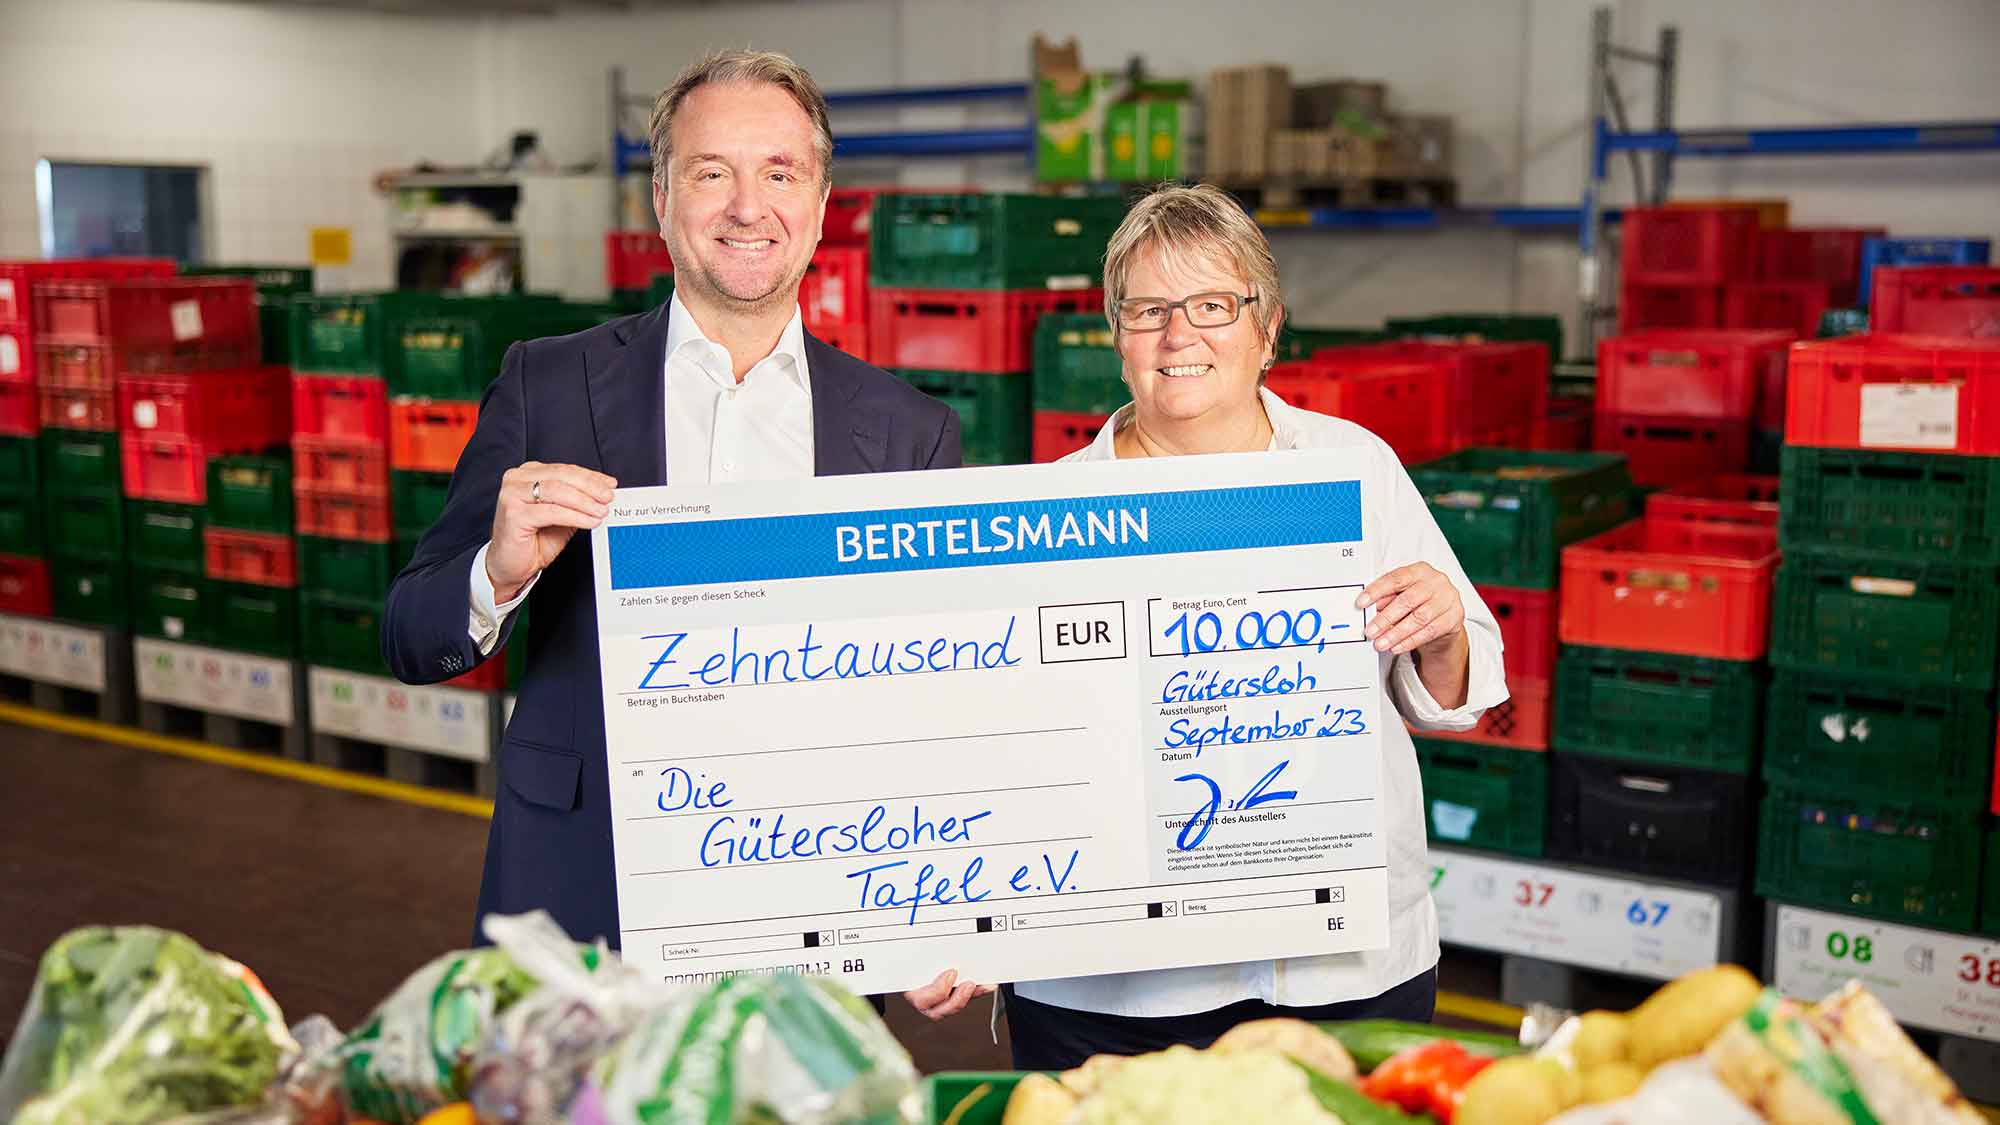 Bertelsmann spendet 10.000 Euro an Gütersloher Tafel